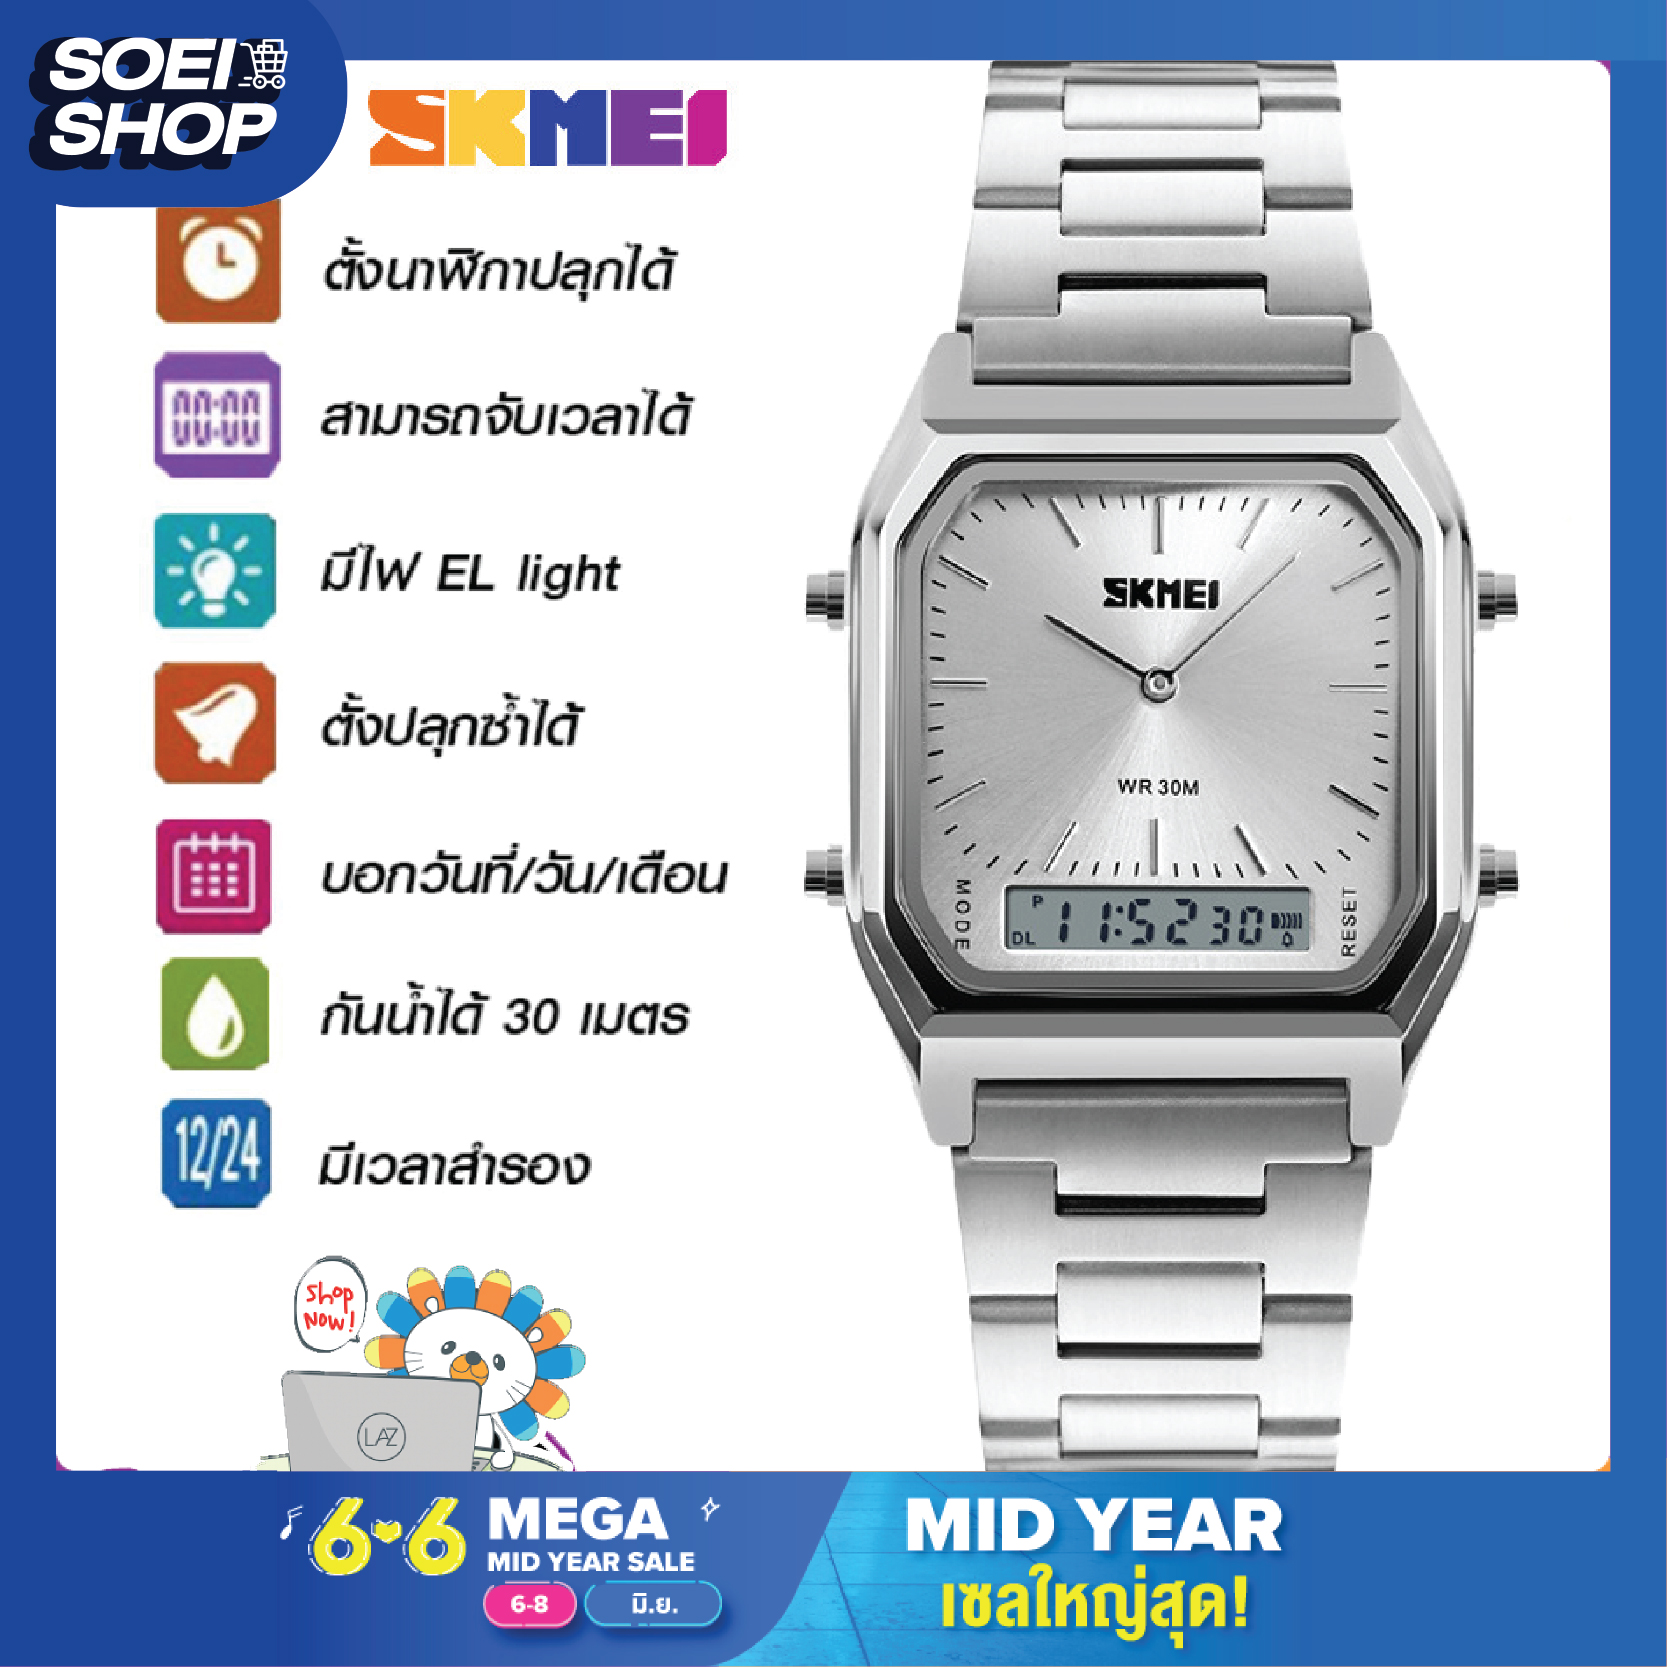 ถูกที่สุด SOEI SHOP SKMEI 1220 นาฬิกาข้อมือผู้หญิง นาฬิกาข้อมือผู้ชาย นาฬิกา นาฬิกาสองระบบ ของแท้ 100% ส่งเร็ว พร้อมกล่องใบรับประกันครบเซ็ท กันน้ำ 30m รุ่น SK02